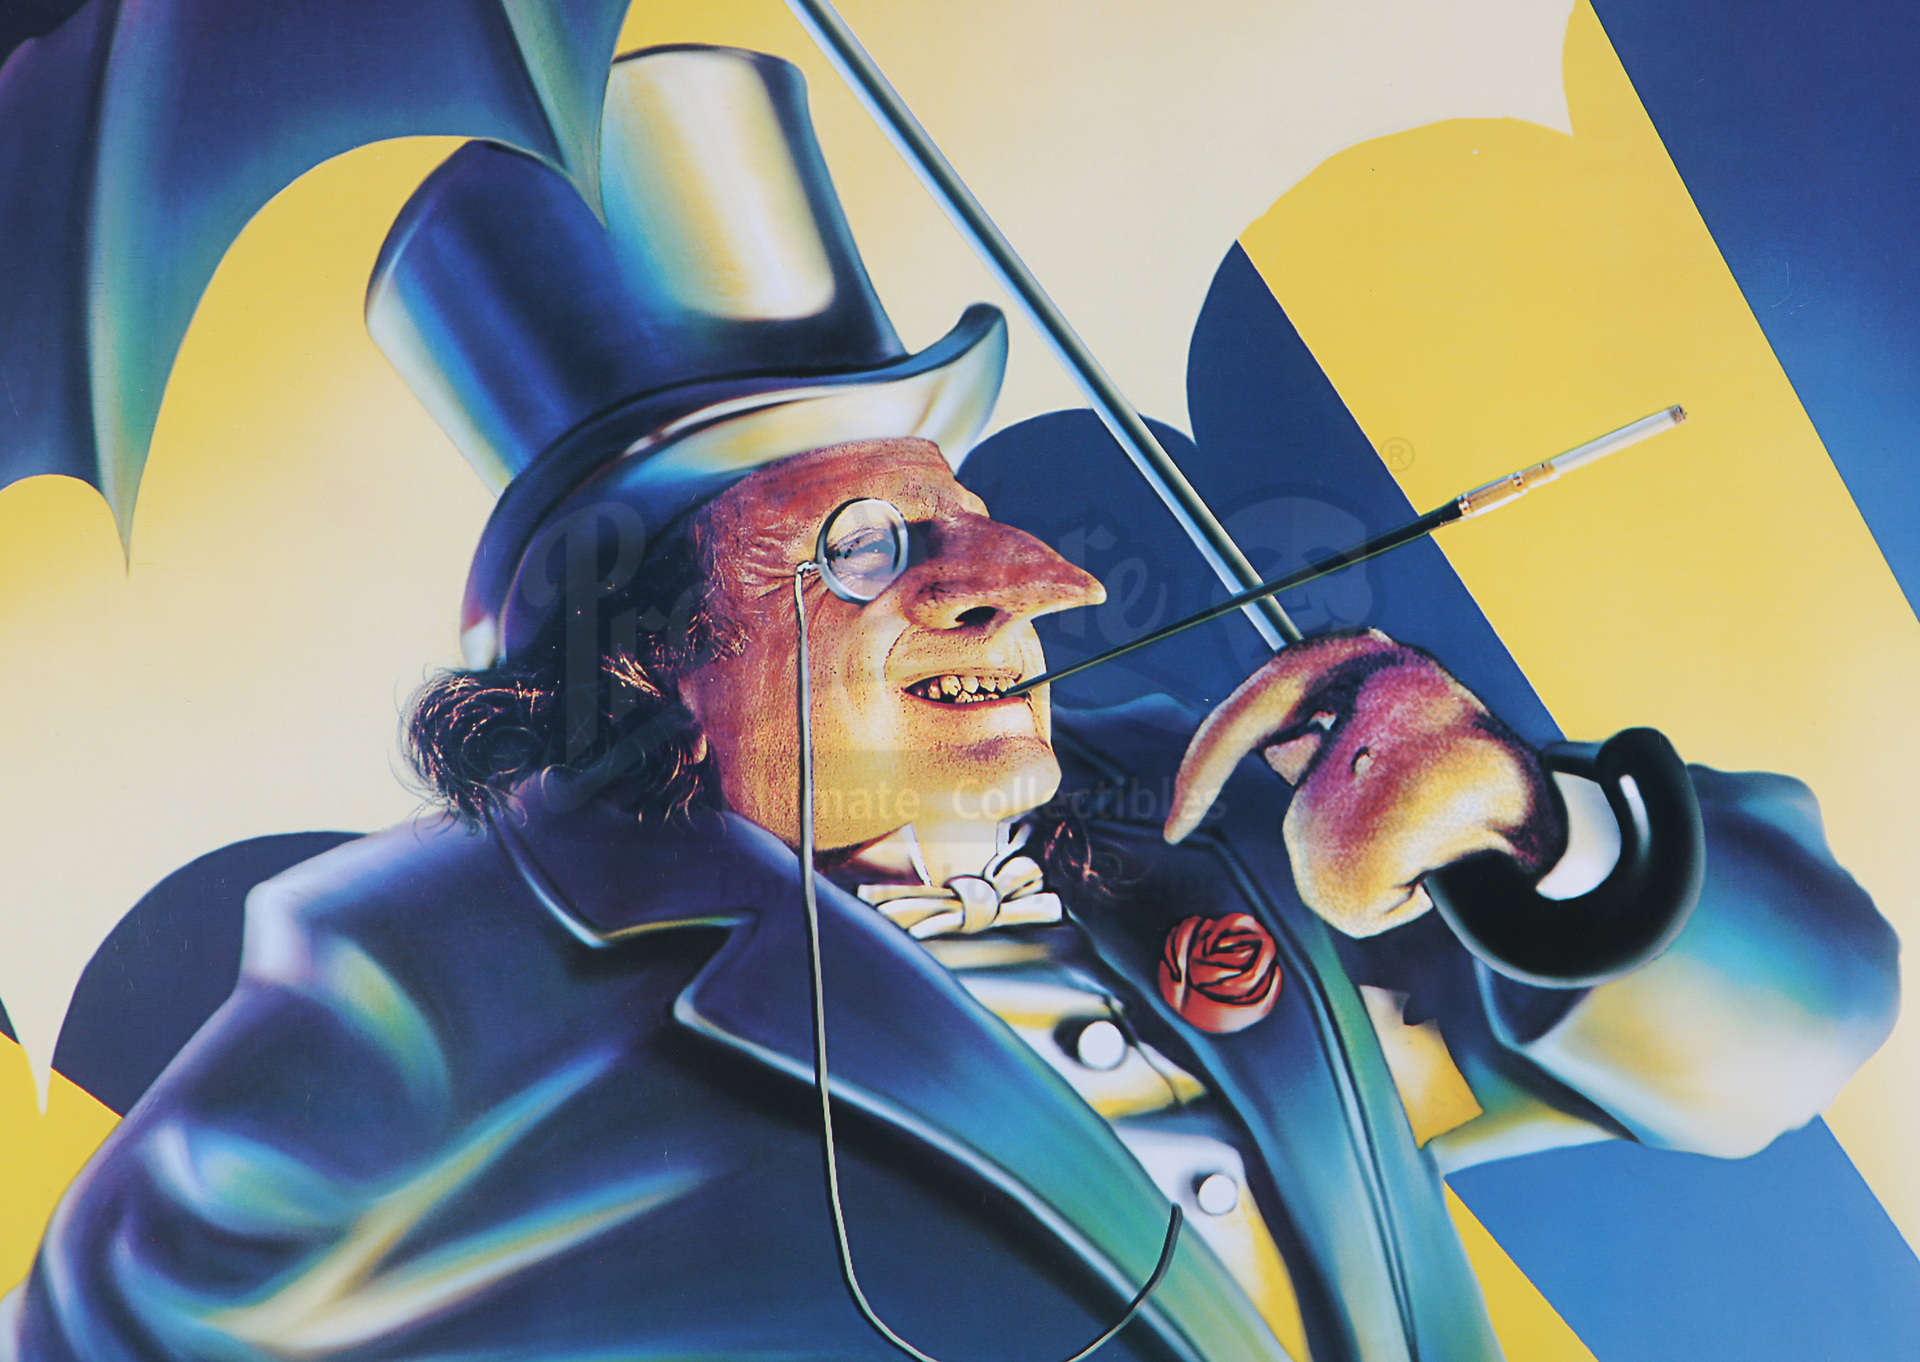 BATMAN RETURNS (1992) - Oswald Cobblepot For Mayor Election Poster - Image 2 of 7